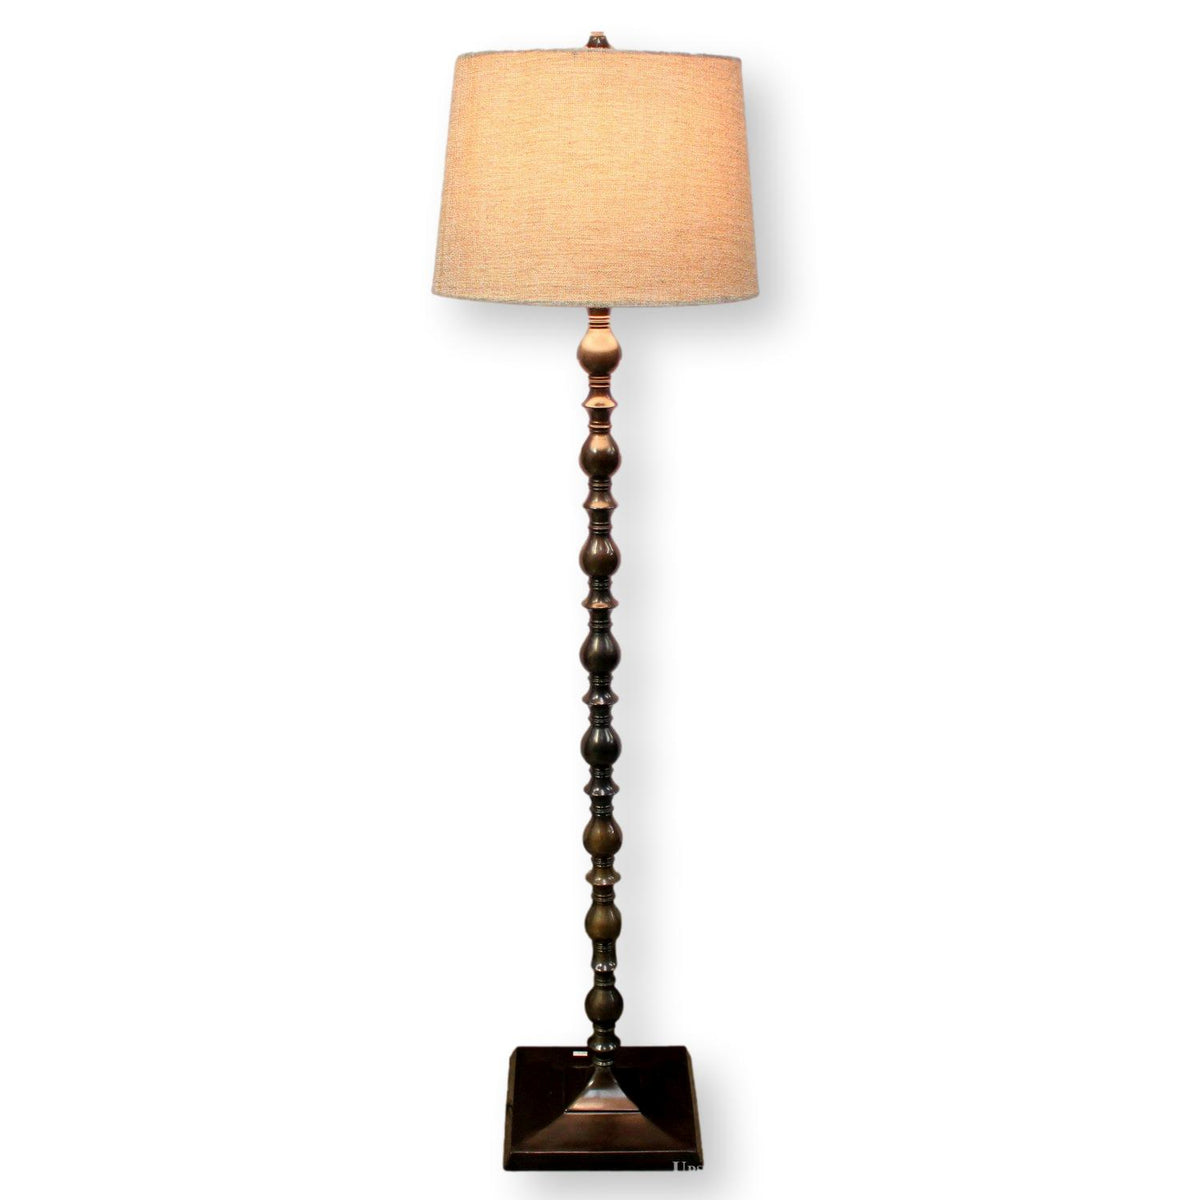 Knobby Wooden Floor Lamp